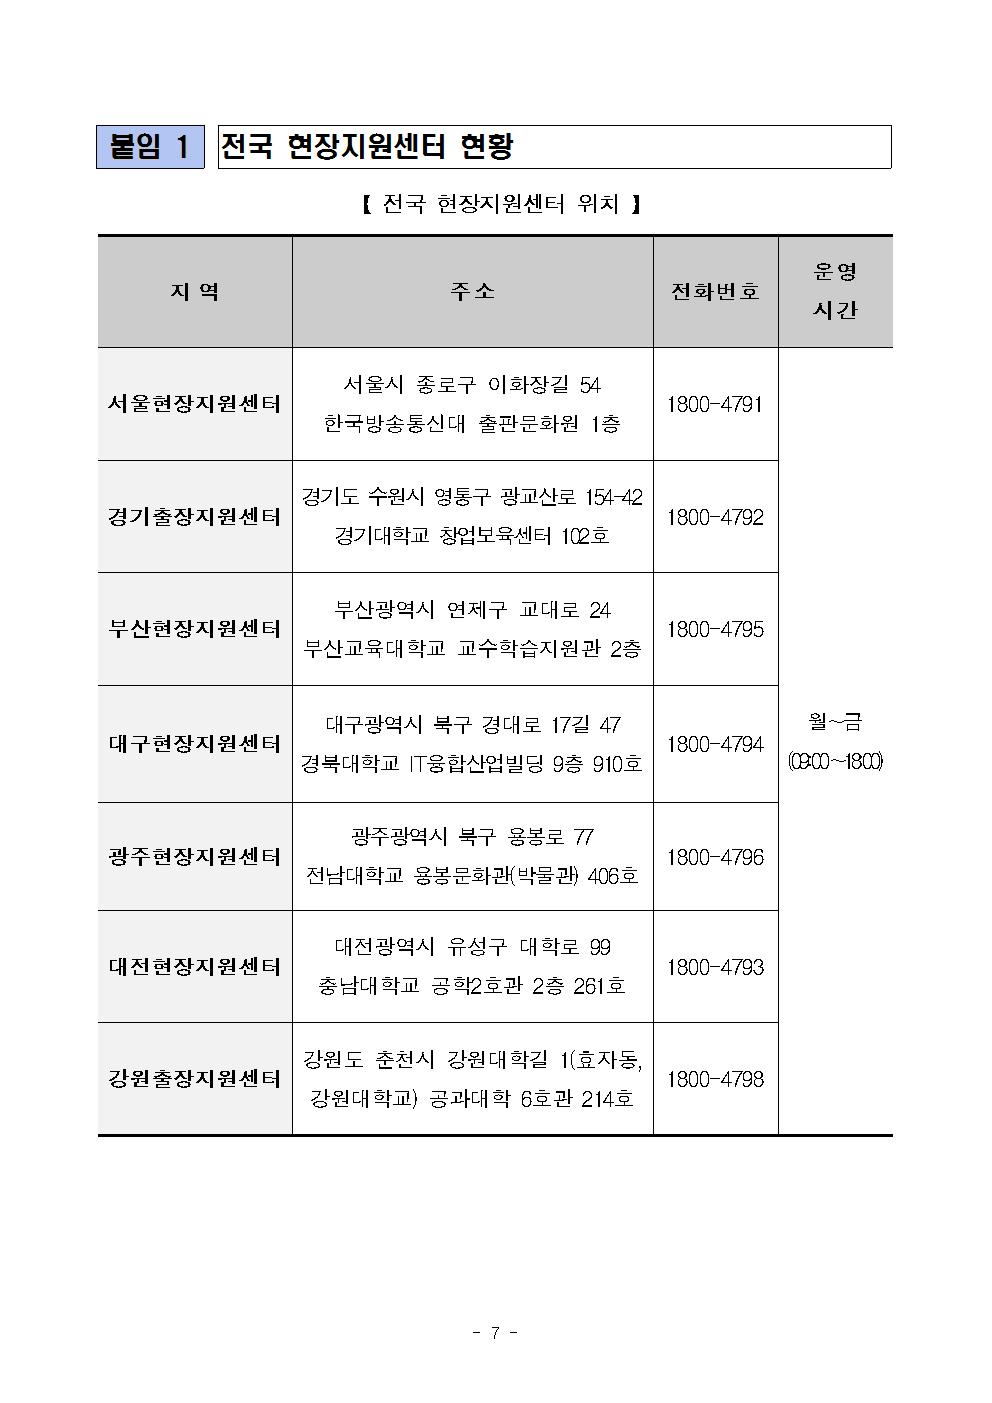 09-04(월)[보도자료] 2017년 2학기 국가장학금 2차 신청 마감 안내007.jpg